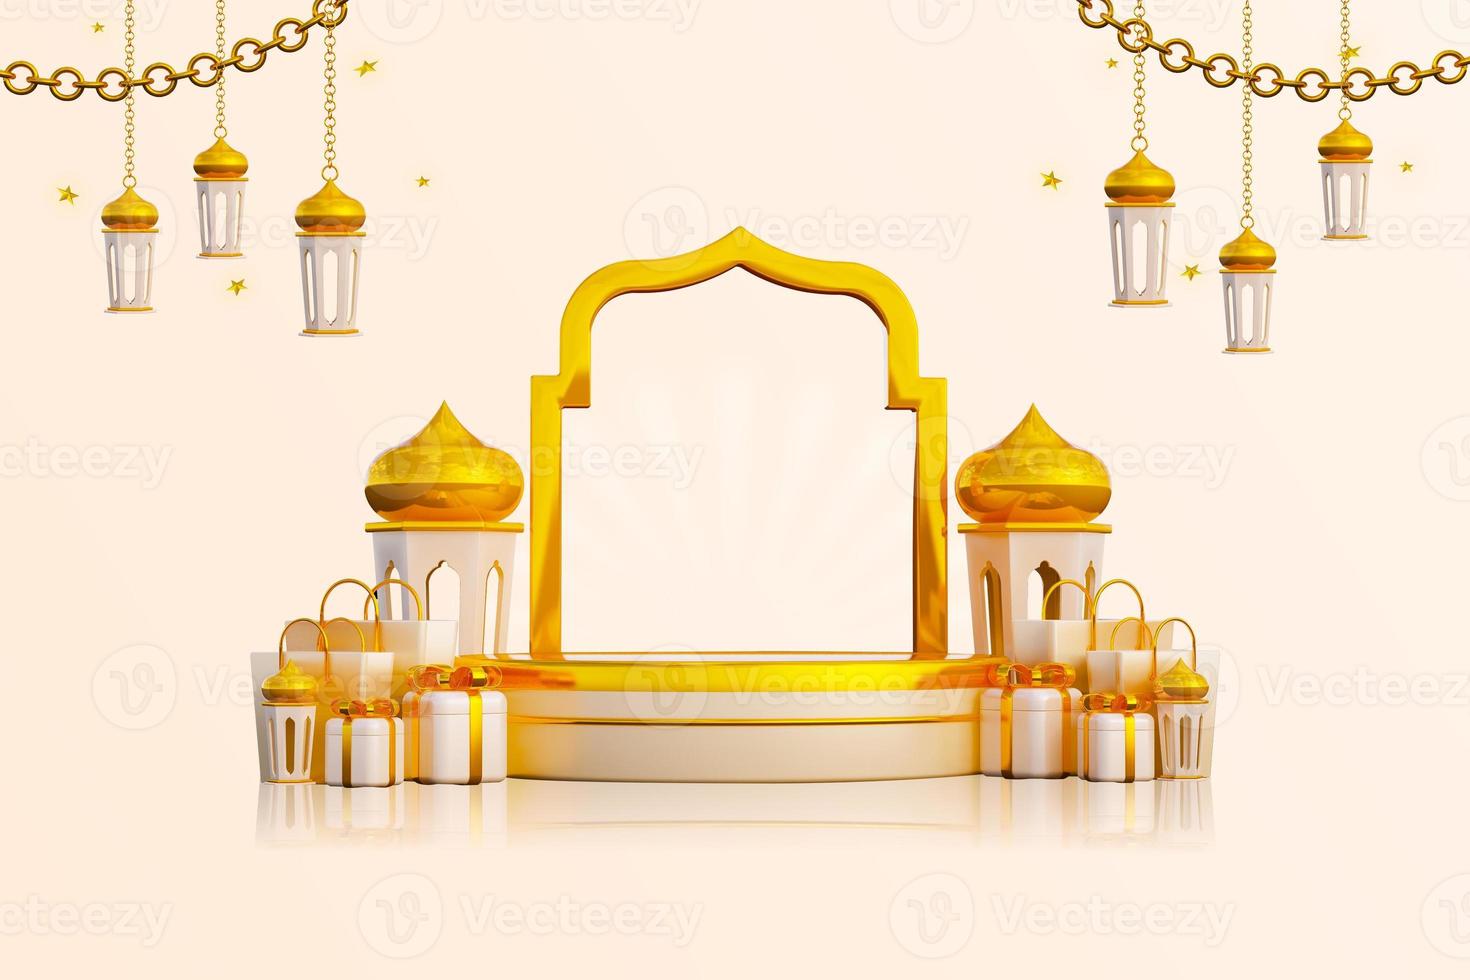 luxus-ramadan-gruß-hintergrundbanner mit 3d-podium-geschenkboxen und islamischen dekorationsobjekten foto